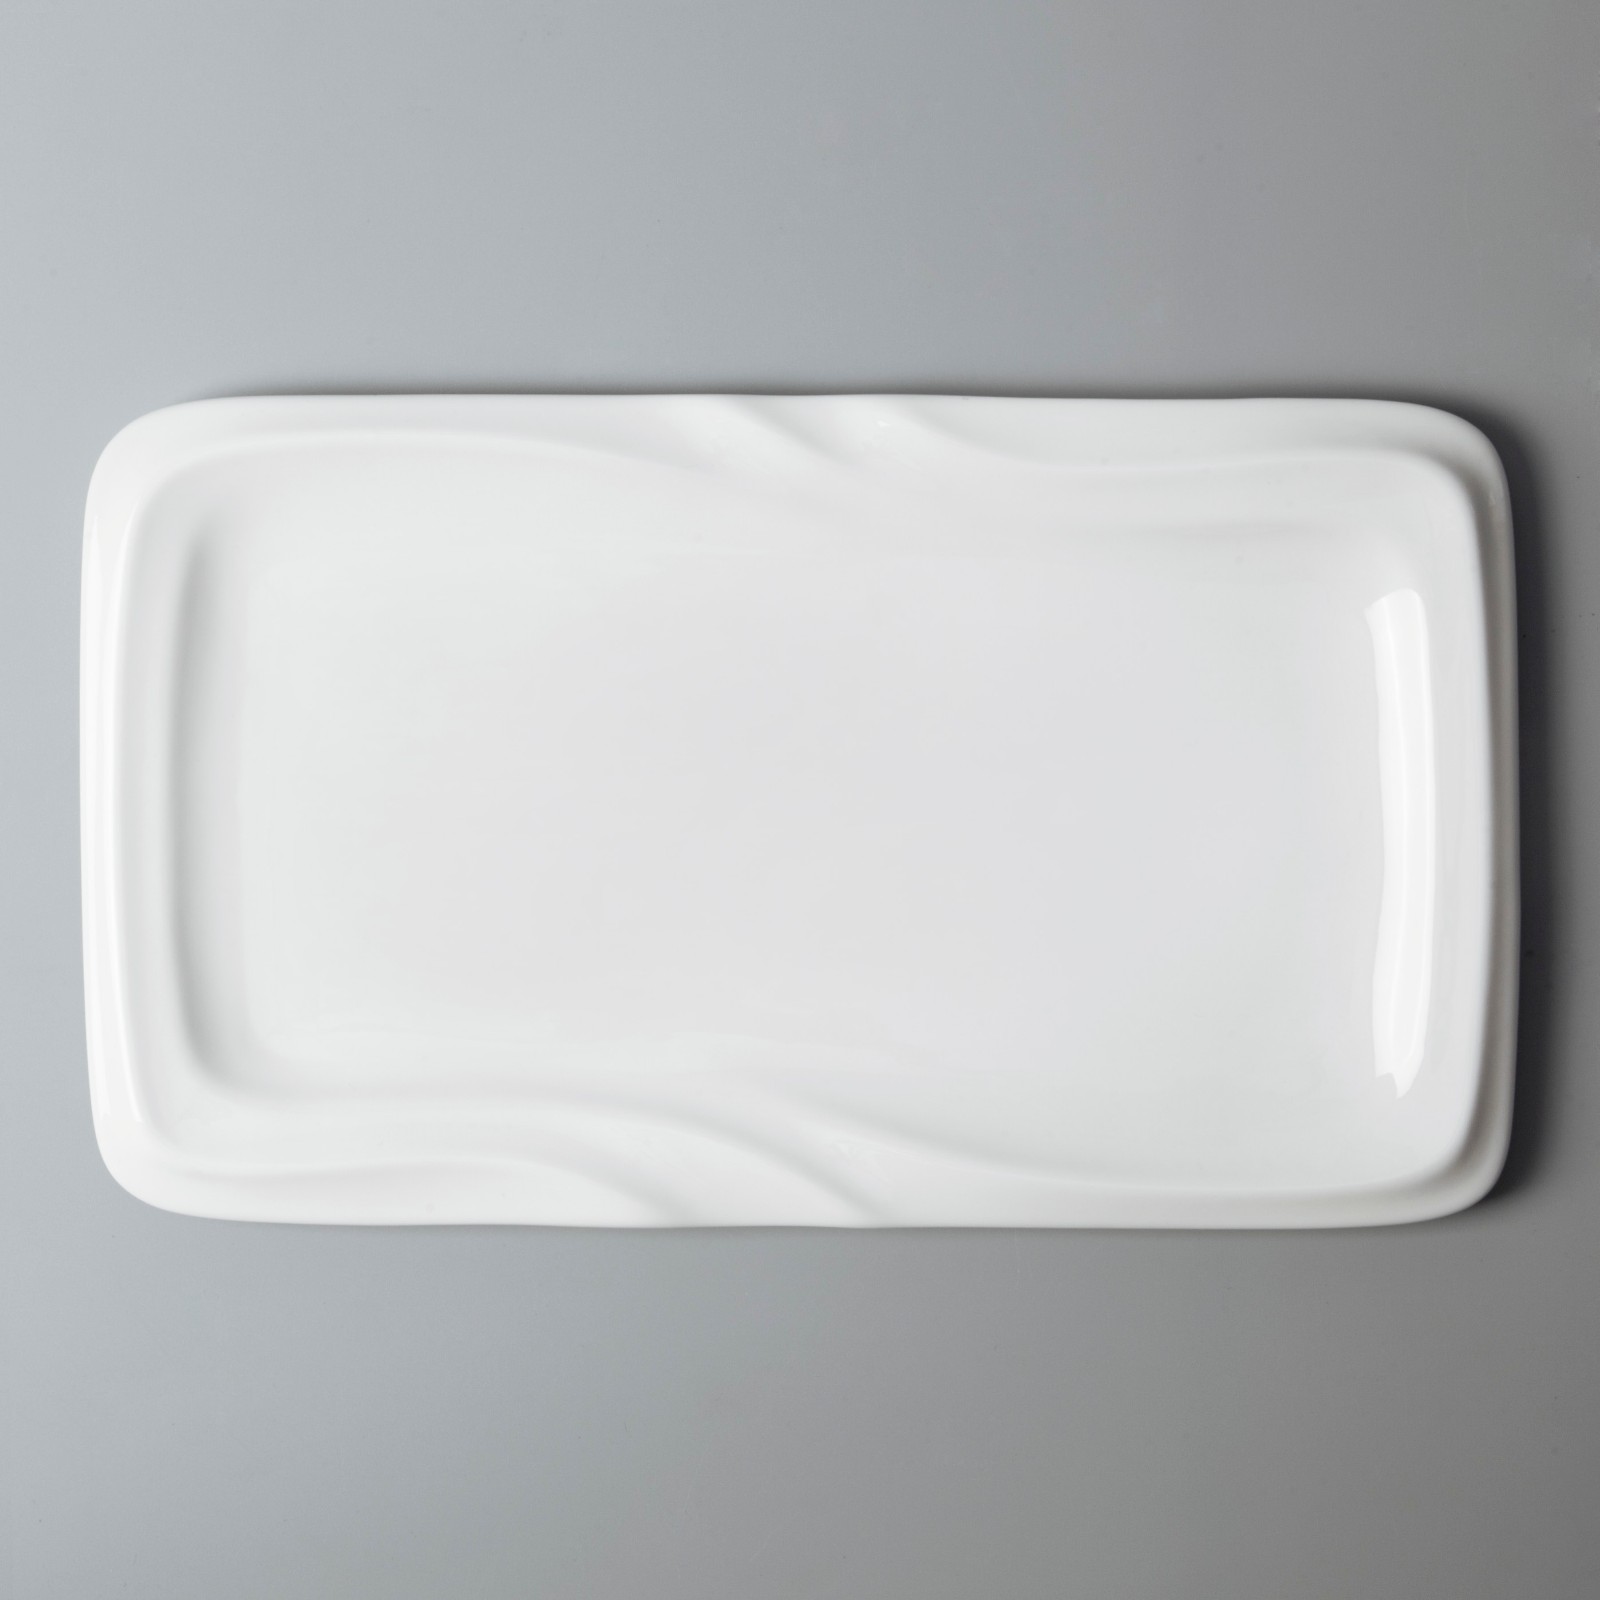 sample fine ceramic dinnerware stock for dinning room Two Eight-13